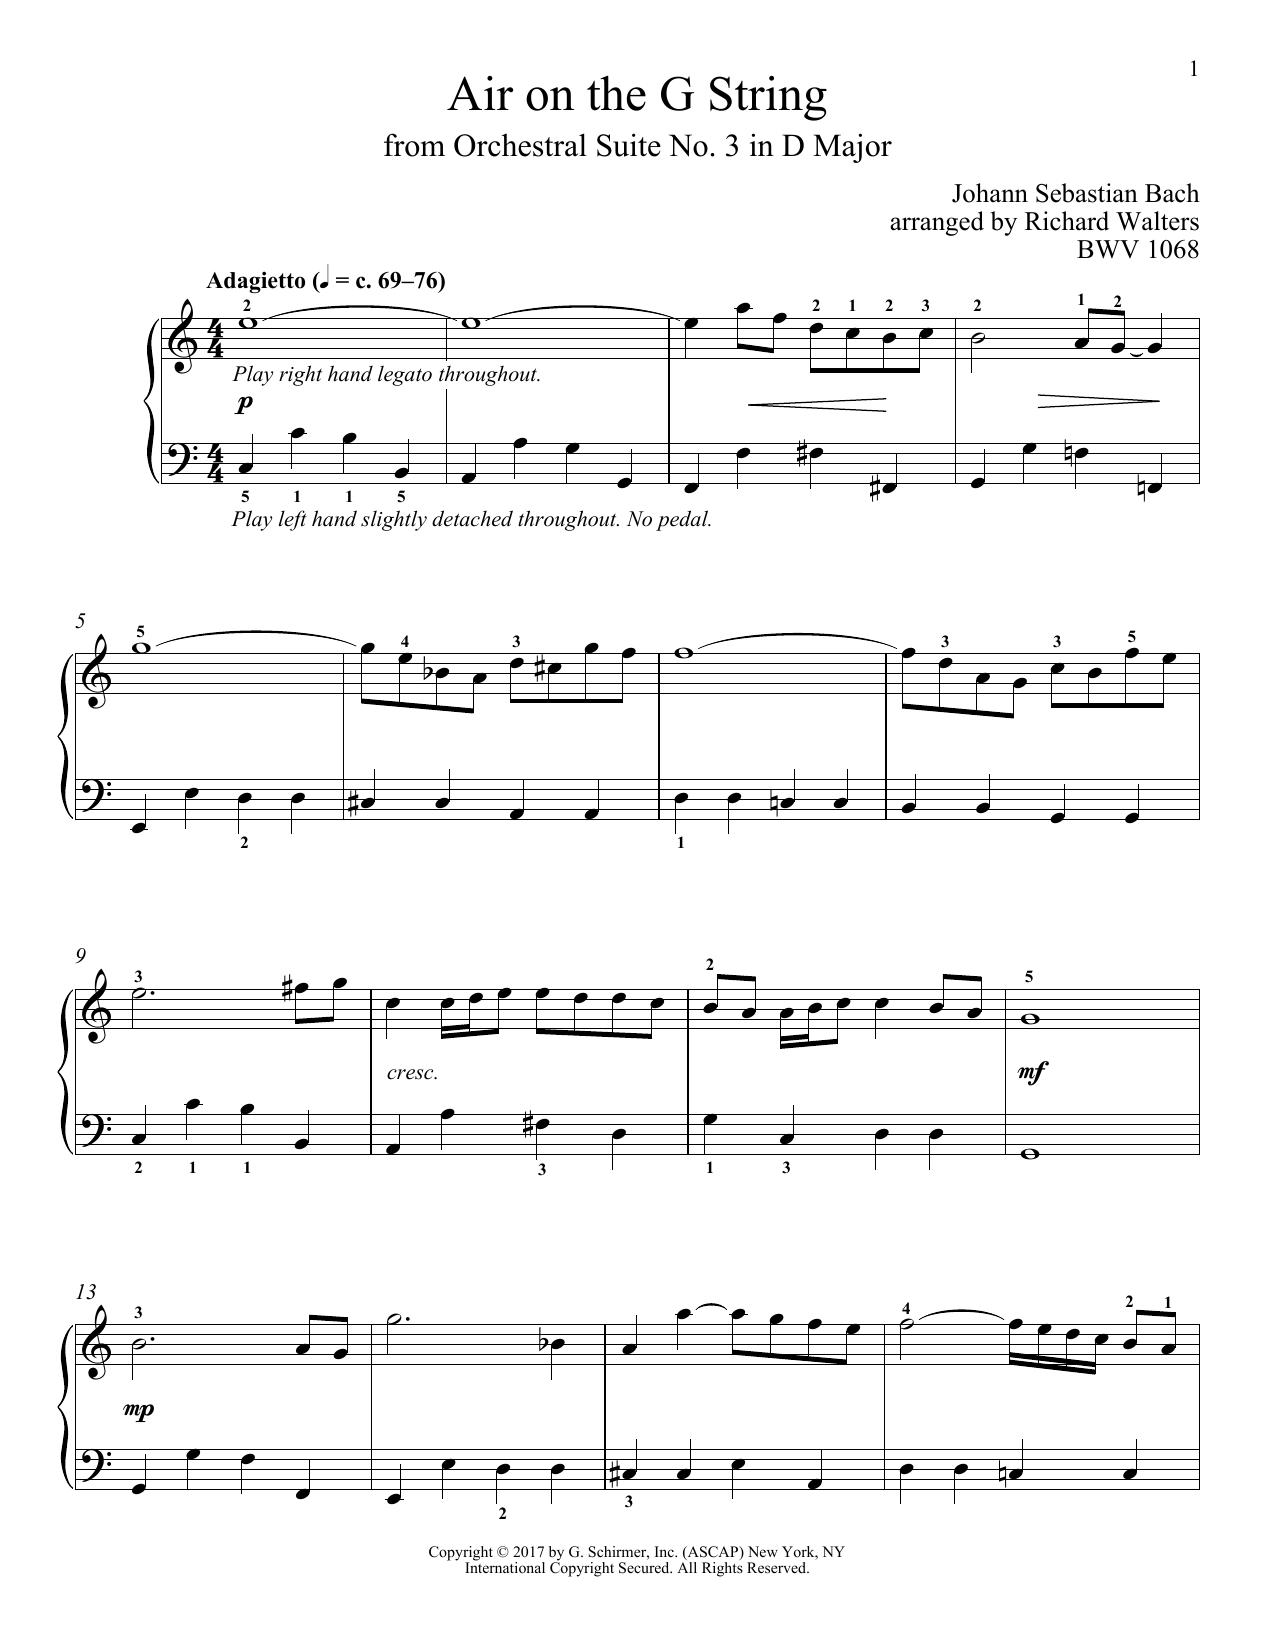 Johann Sebastian Bach Air (Air On The G String) Sheet Music Notes & Chords for Viola - Download or Print PDF